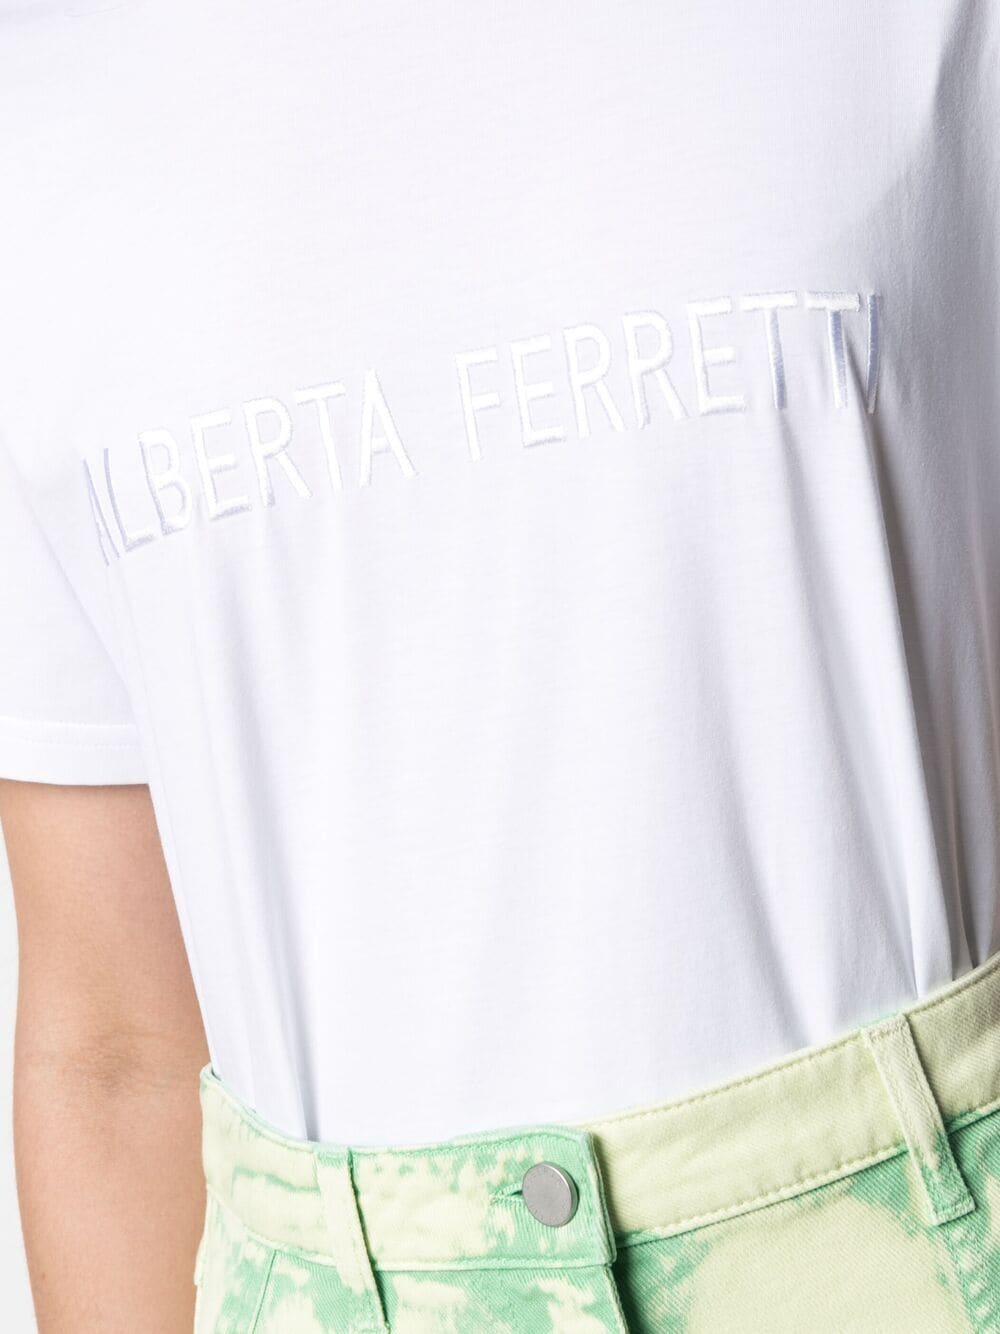 футболка с вышитым логотипом ALBERTA FERRETTI 1614240377